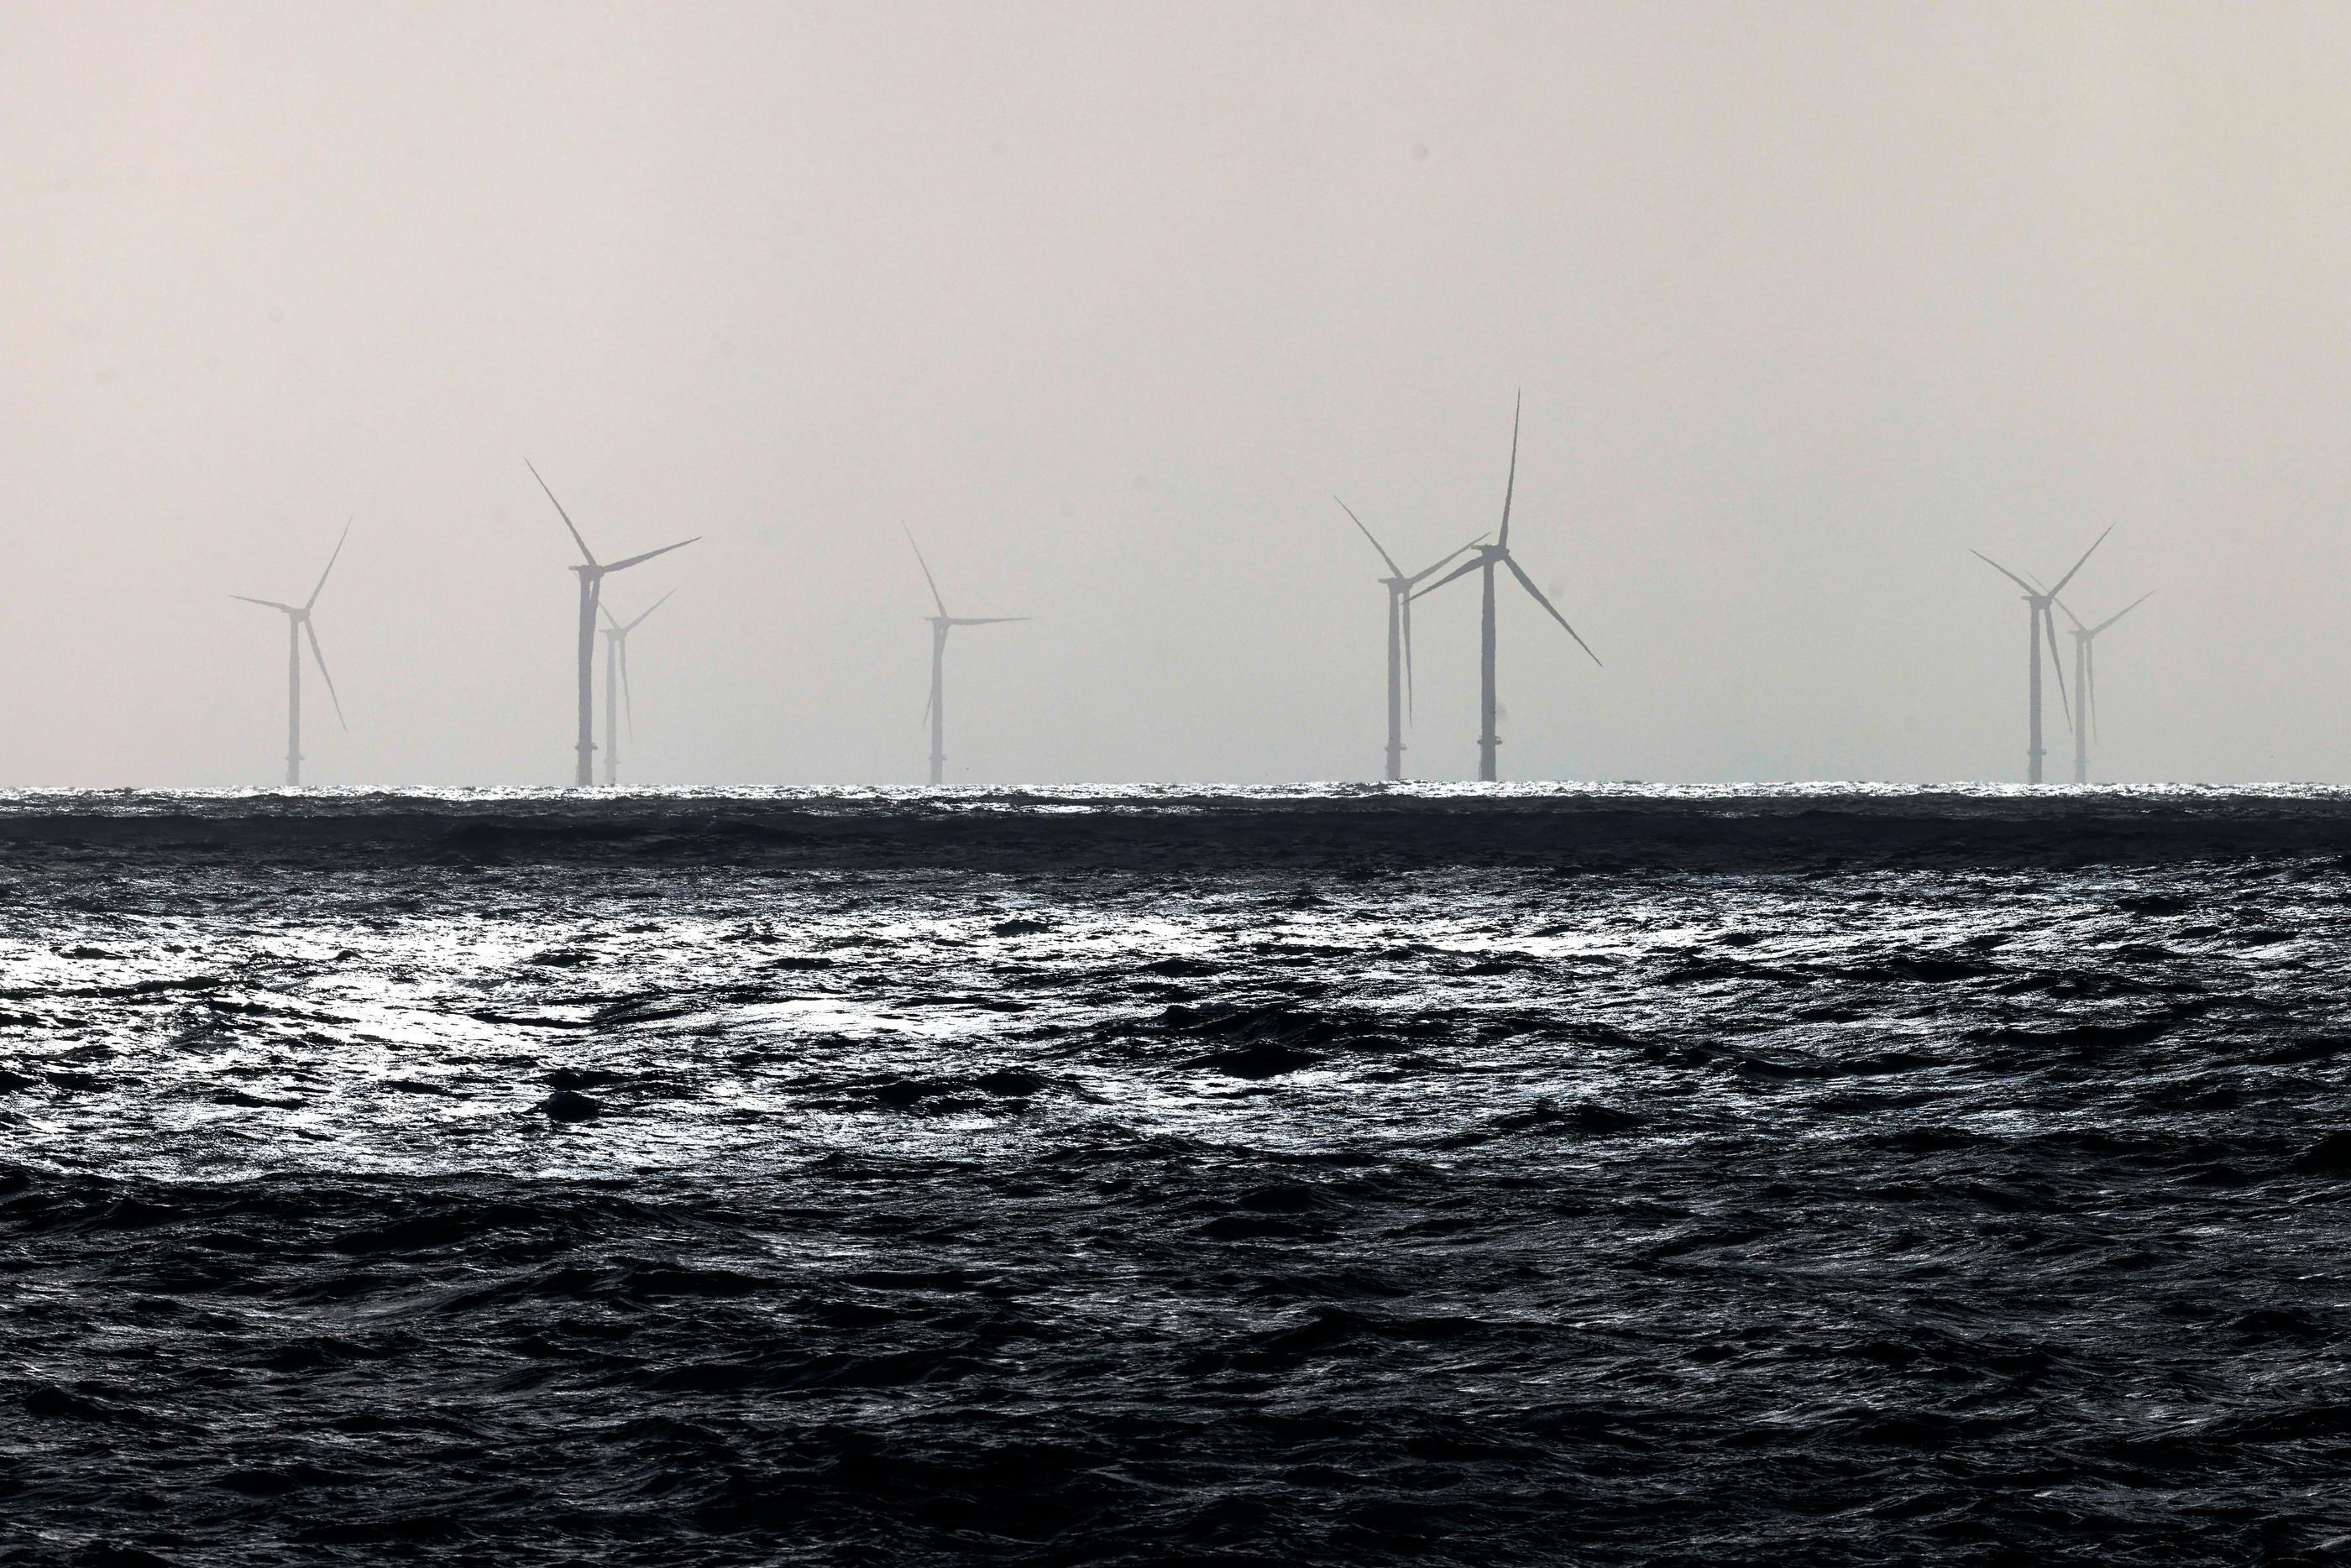 Un parc de 80 éoliennes offshore, en pleine mer, visible depuis la Côte Sauvage, de Batz-sur-mer près de St Nazaire, a été le premier à voir le jour en France. Il produit déjà depuis plusieurs mois de l'électricité grâce une énergie renouvelable./LP /Olivier Corsan